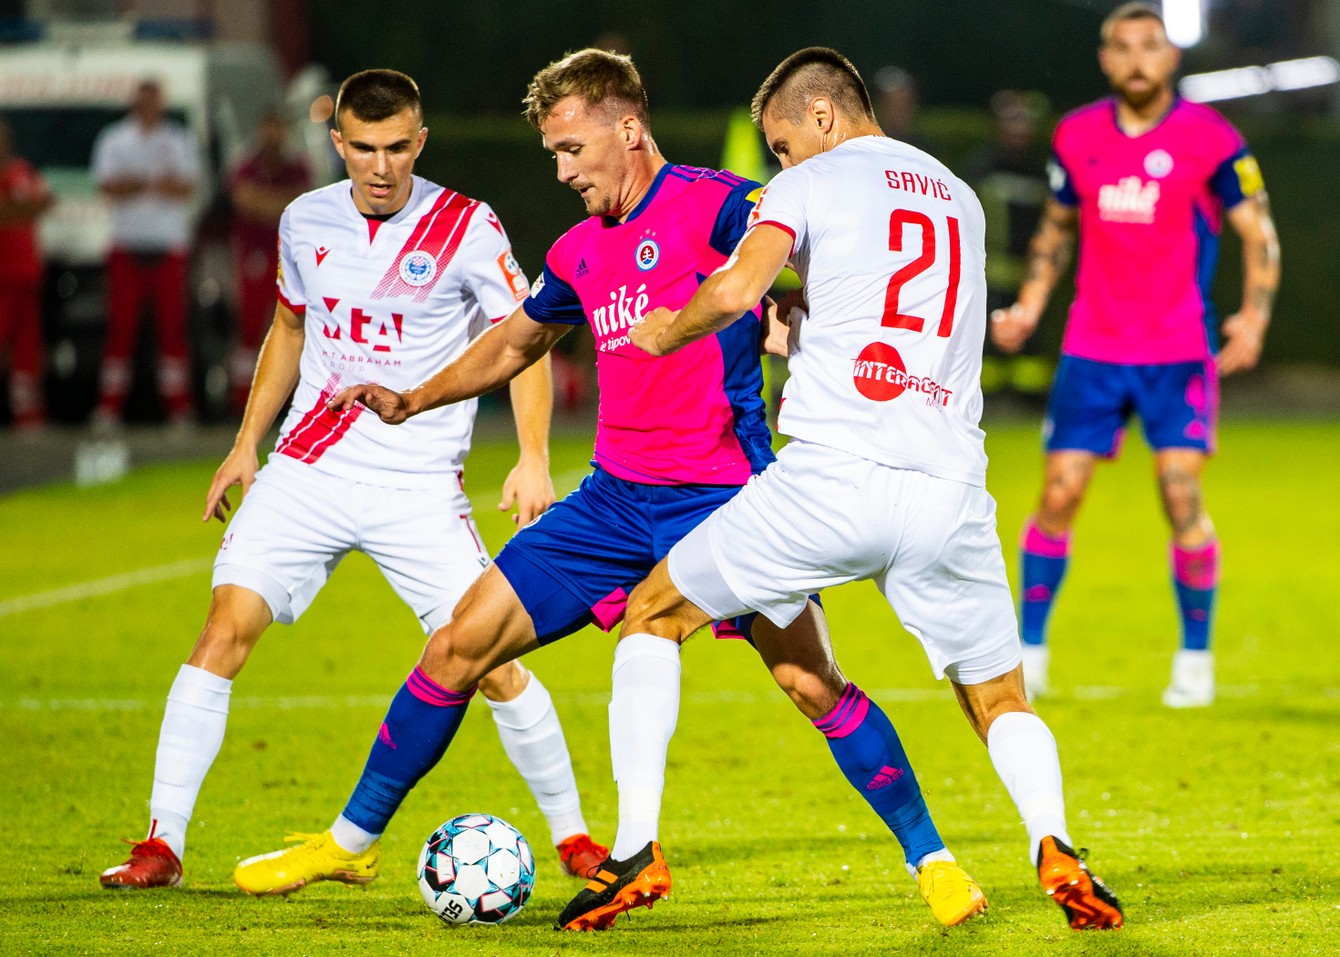 Zľava Ivan Jukič (Mostar), Jurij Medveděv (Slovan) a Igor Savič (Mostar) bojujú o loptu počas prvého zápasu play-off EKL HŠK Zrinjski Mostar - ŠK Slovan Bratislava v Mostare.